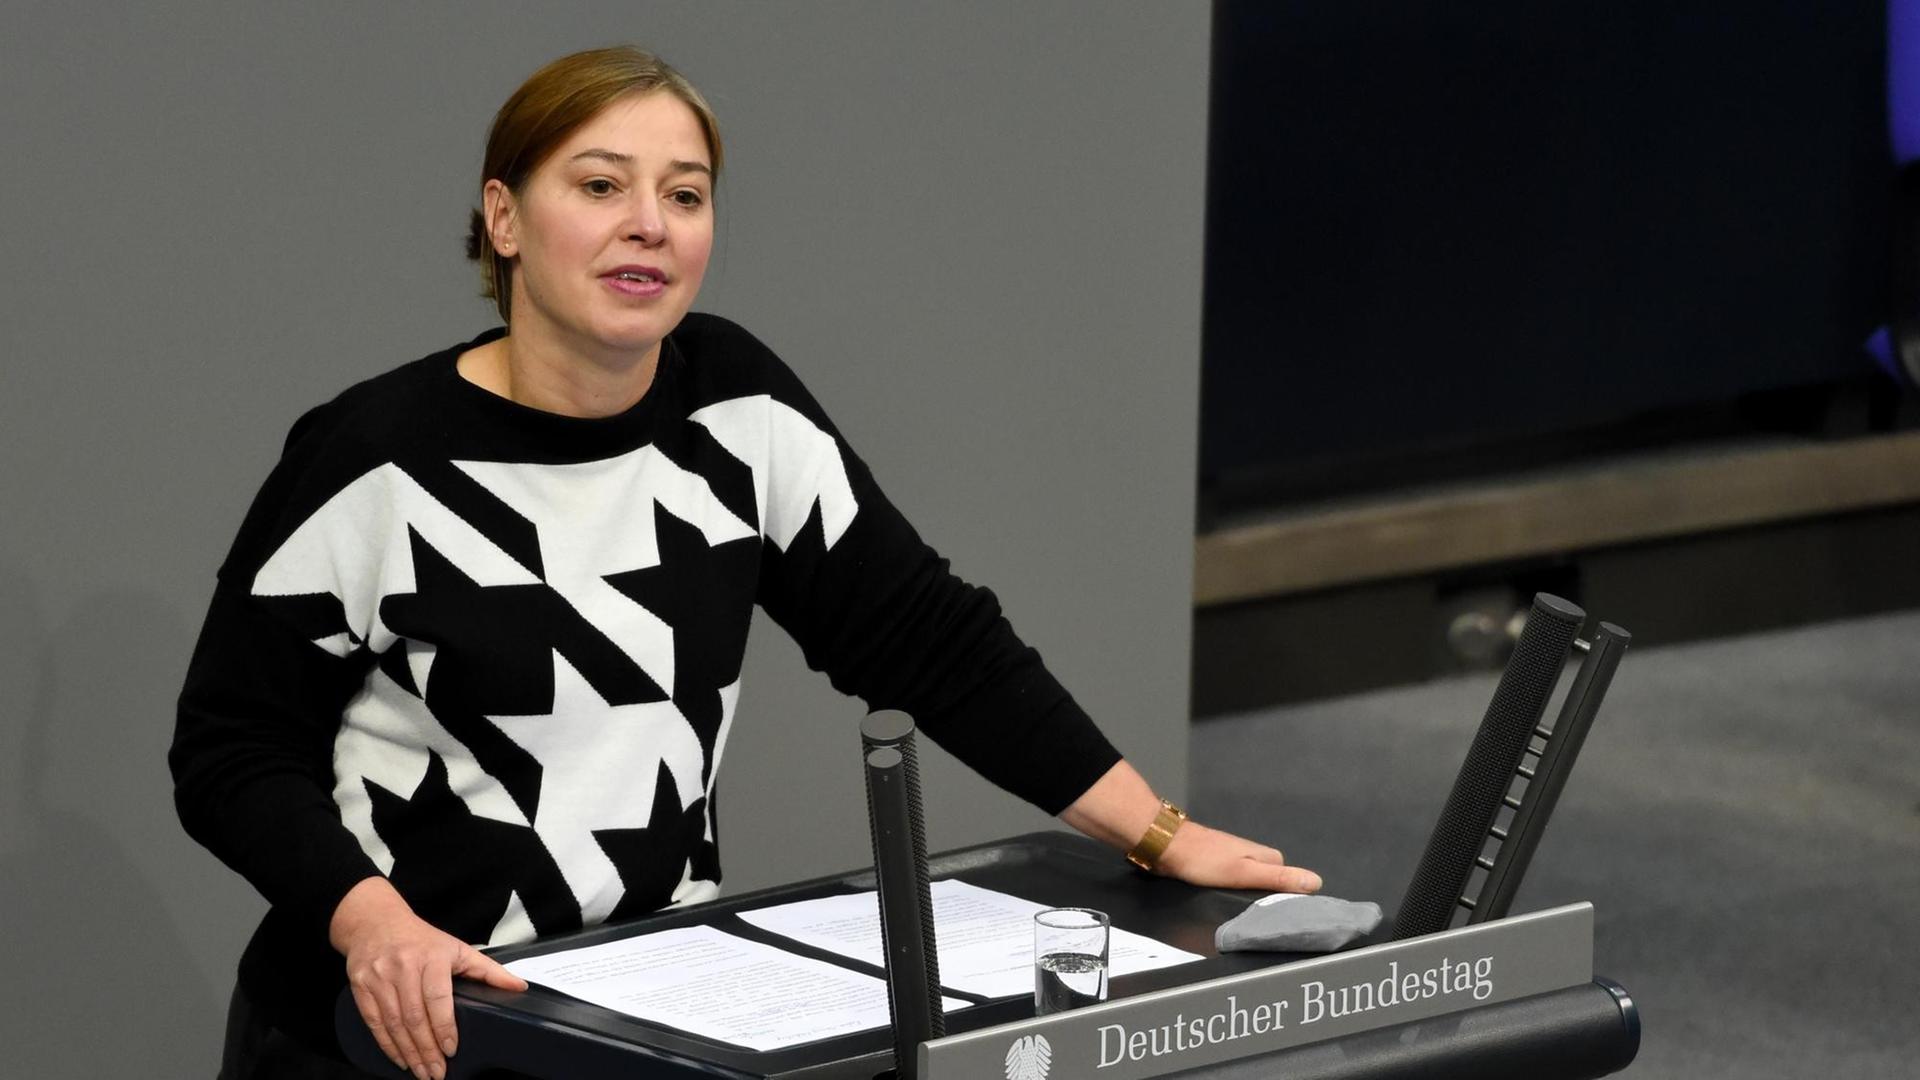 Berlin - Bundestagsvizepräsidentin Magwas (CDU) will Arbeitserleichterungen für Abgeordnete mit kleinen Kindern